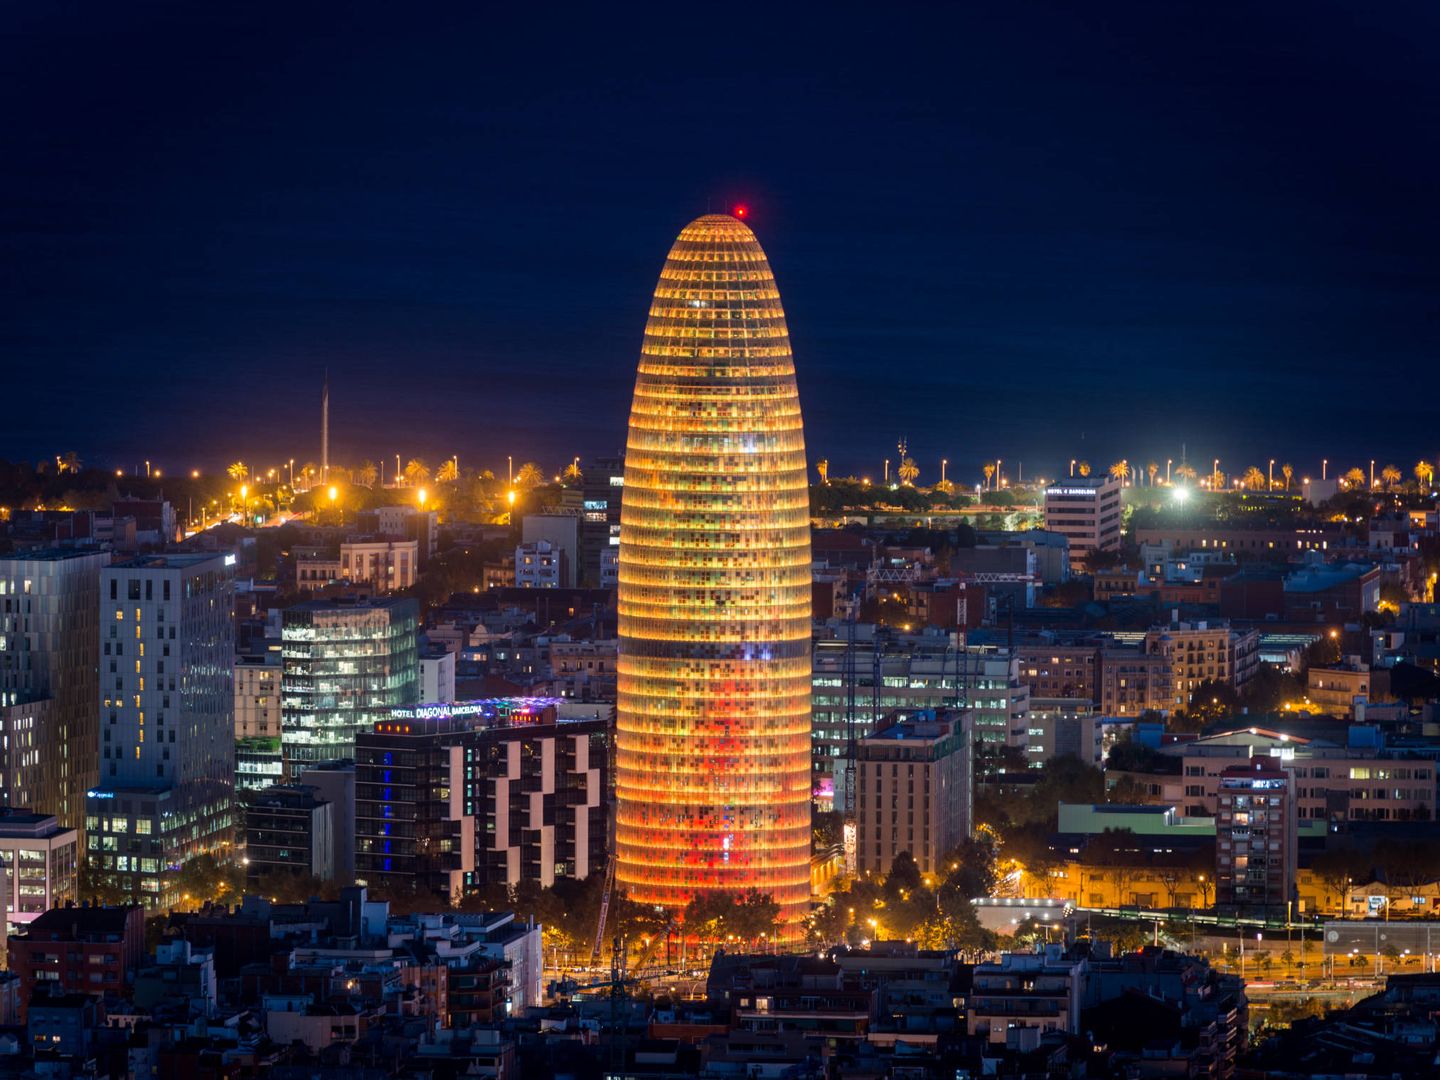 La torre Agbar, uno de los símbolos de Barcelona. (Efe)